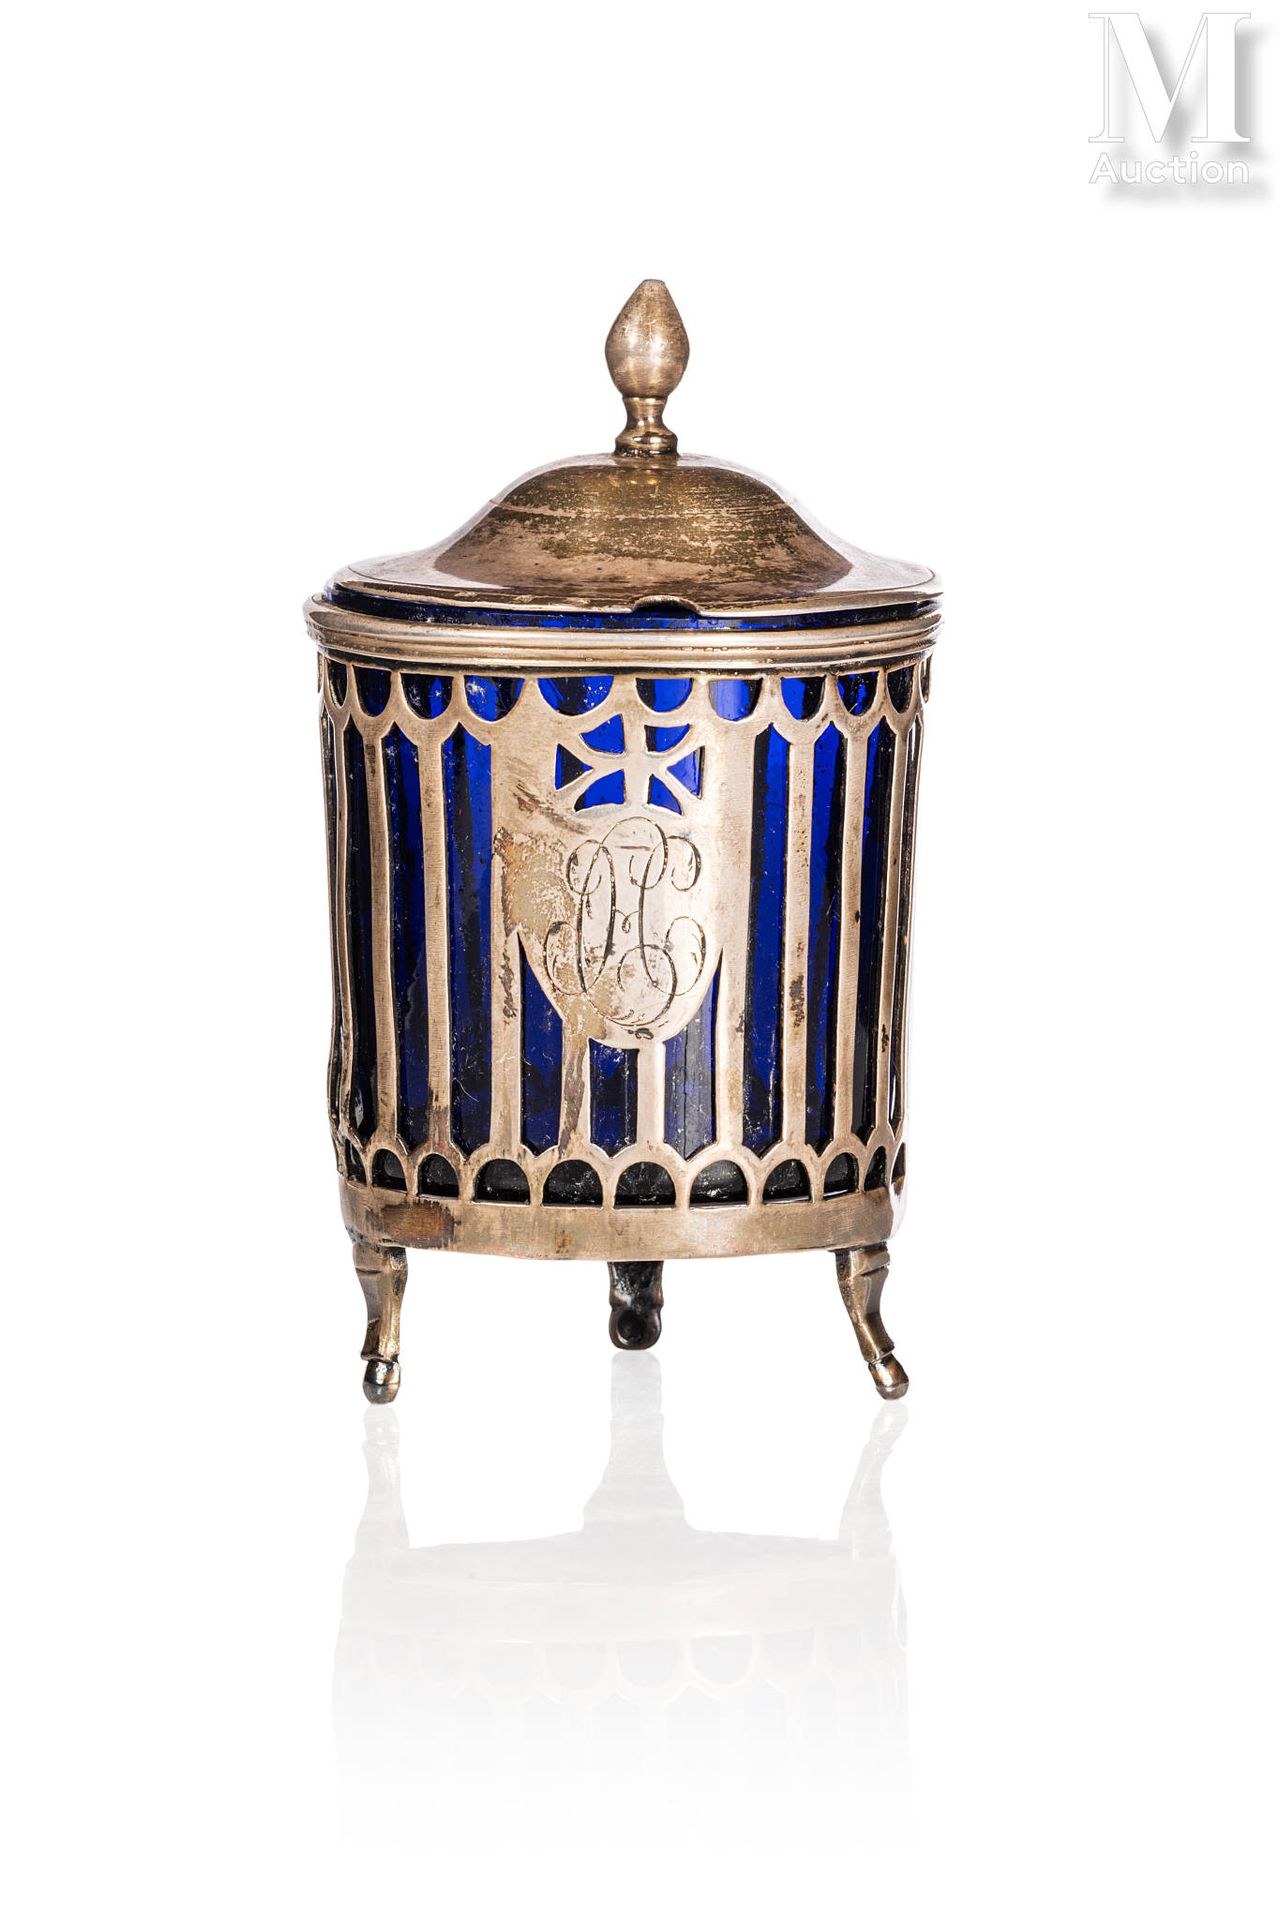 Moutardier 银鼎，鼎身镂空，有弧度，塔尖为卵形，内有蓝色玻璃
18世纪
高：10厘米
净重：80克
缺少手柄，事故